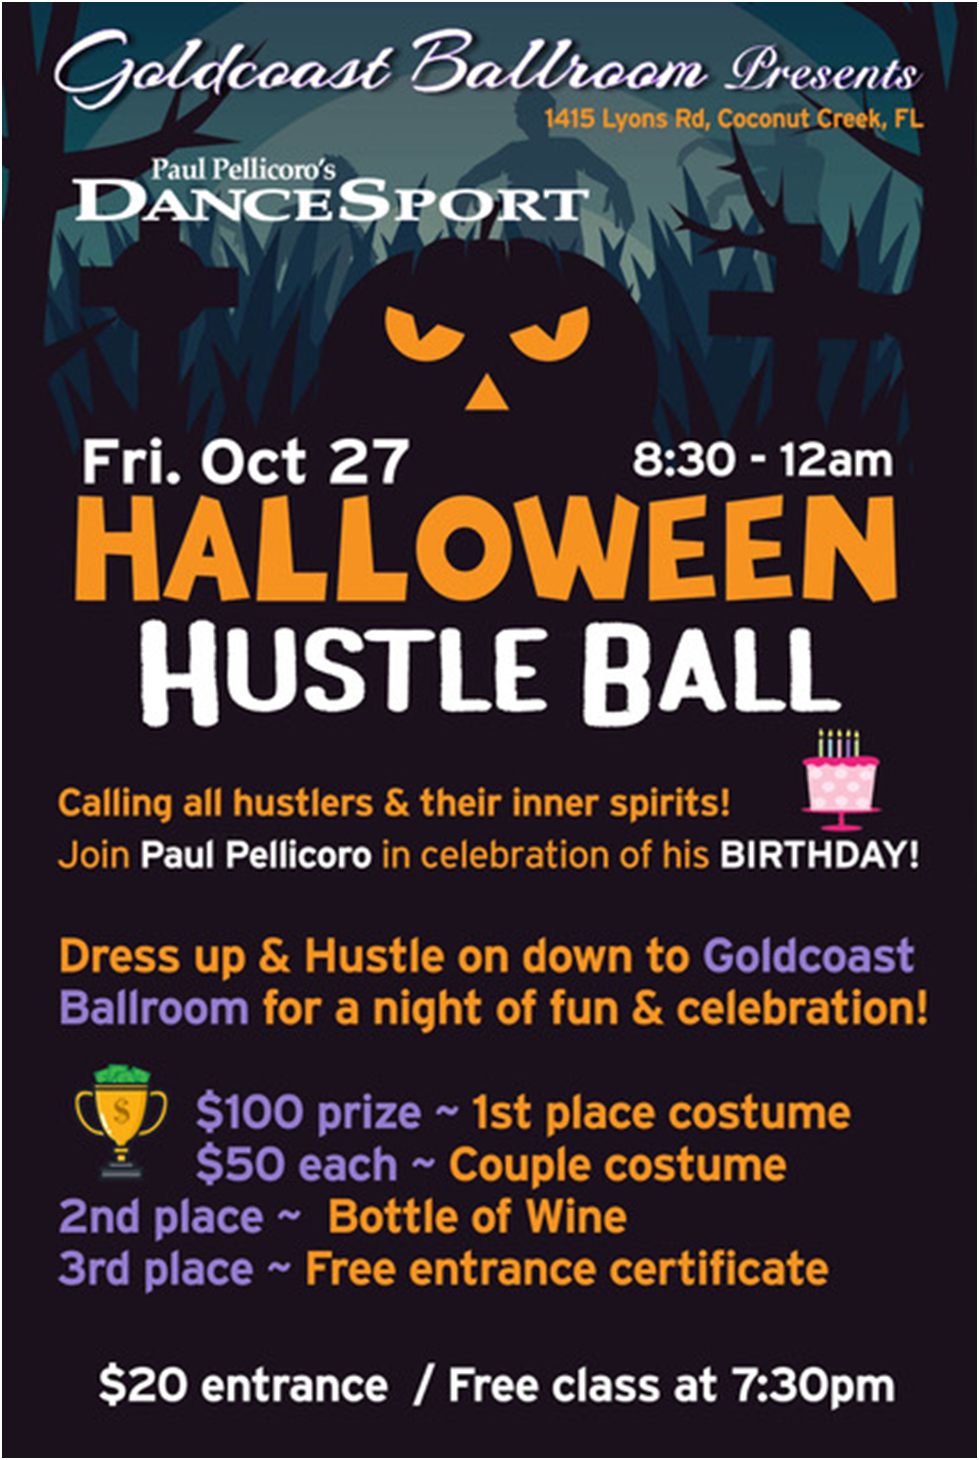 October 27 - Halloween Hustle Ball & Birthday Celebration for Paul Pellicoro